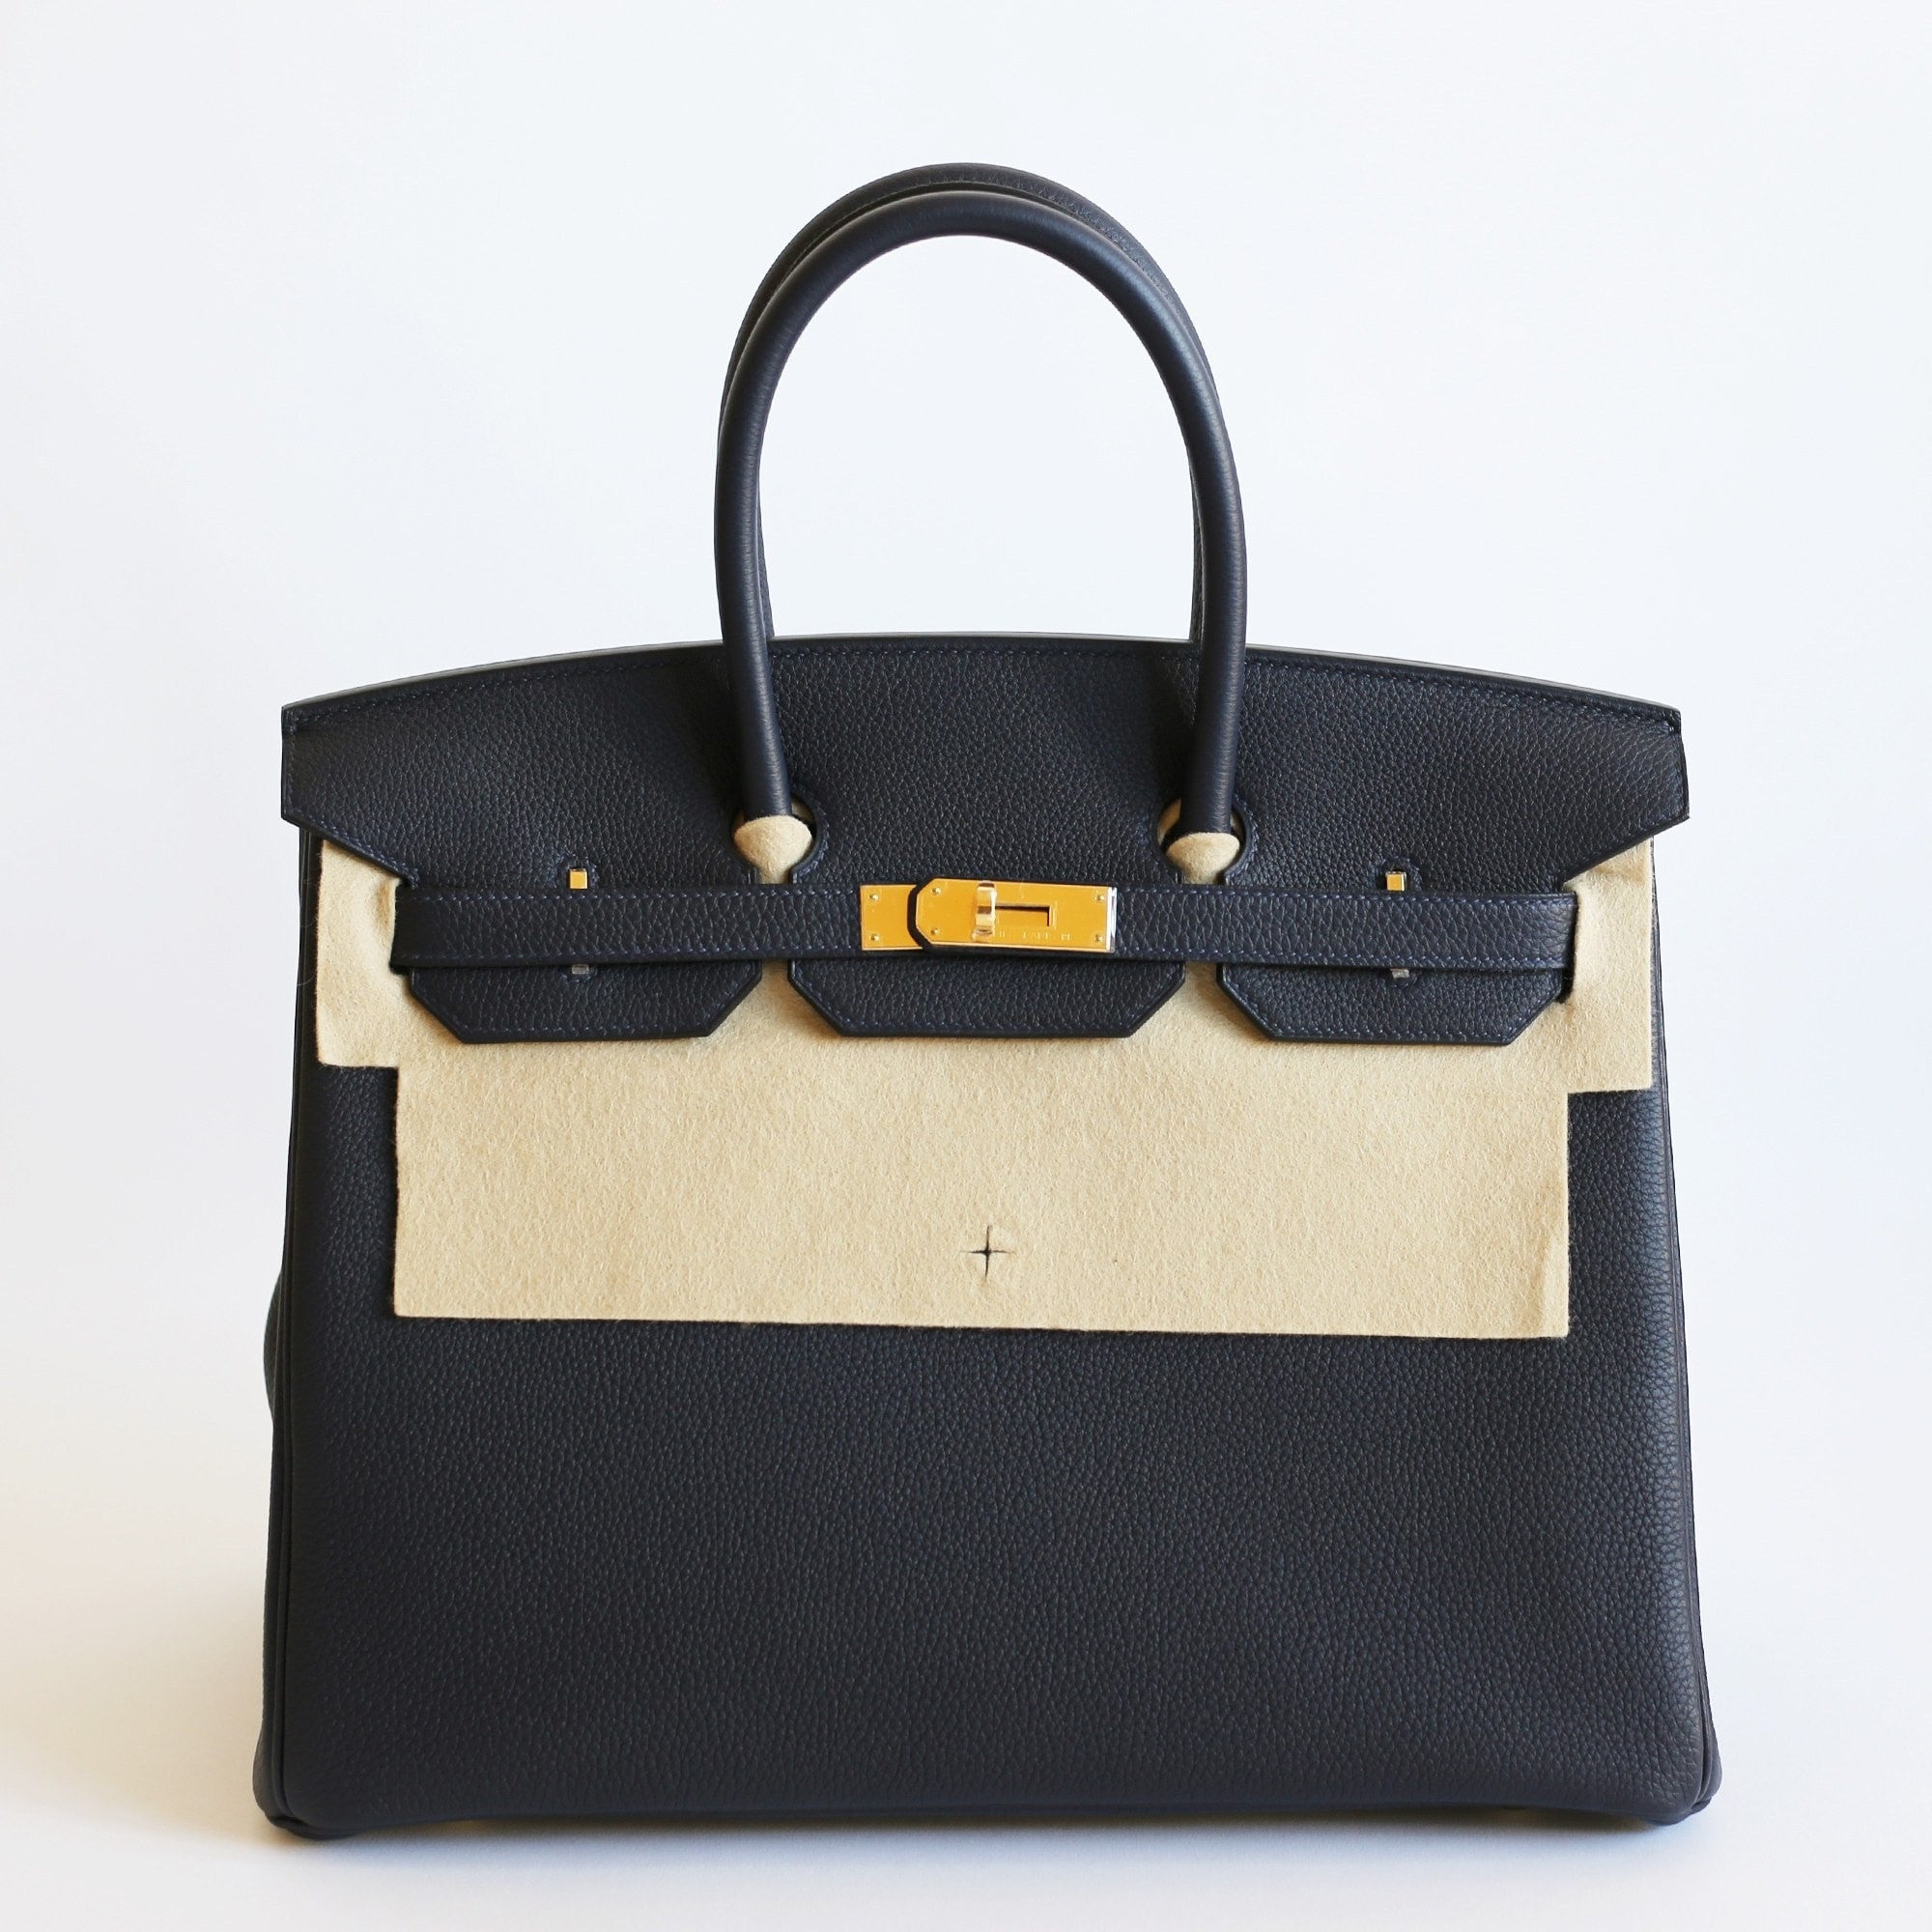 Hermes Birkin Togo 30 Women's Leather Bag - 30-BLACK-TOGO-GOLD